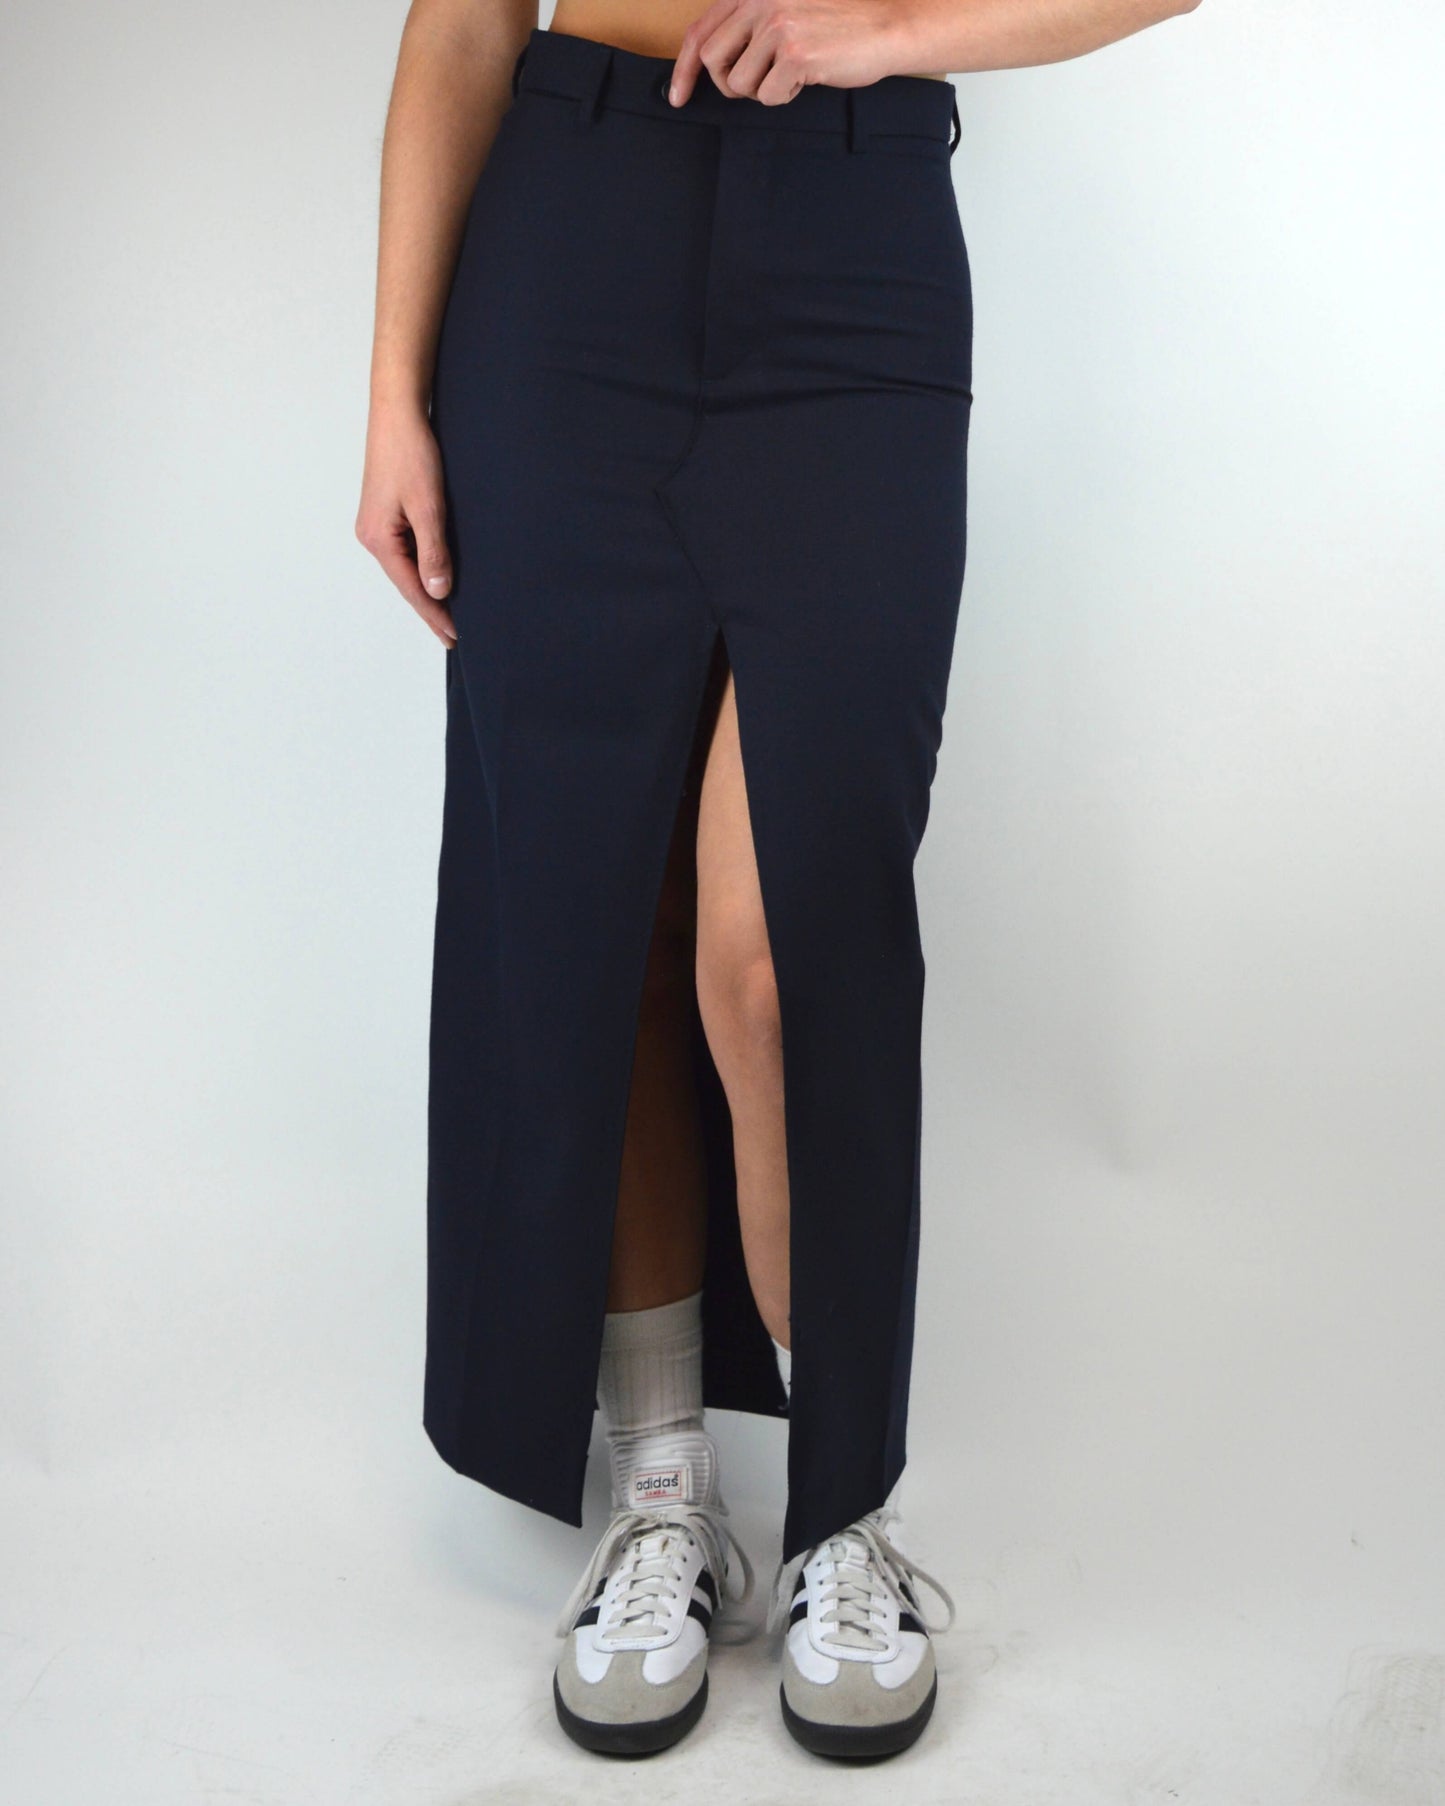 Long Skirt - Navy Short (XS/S)